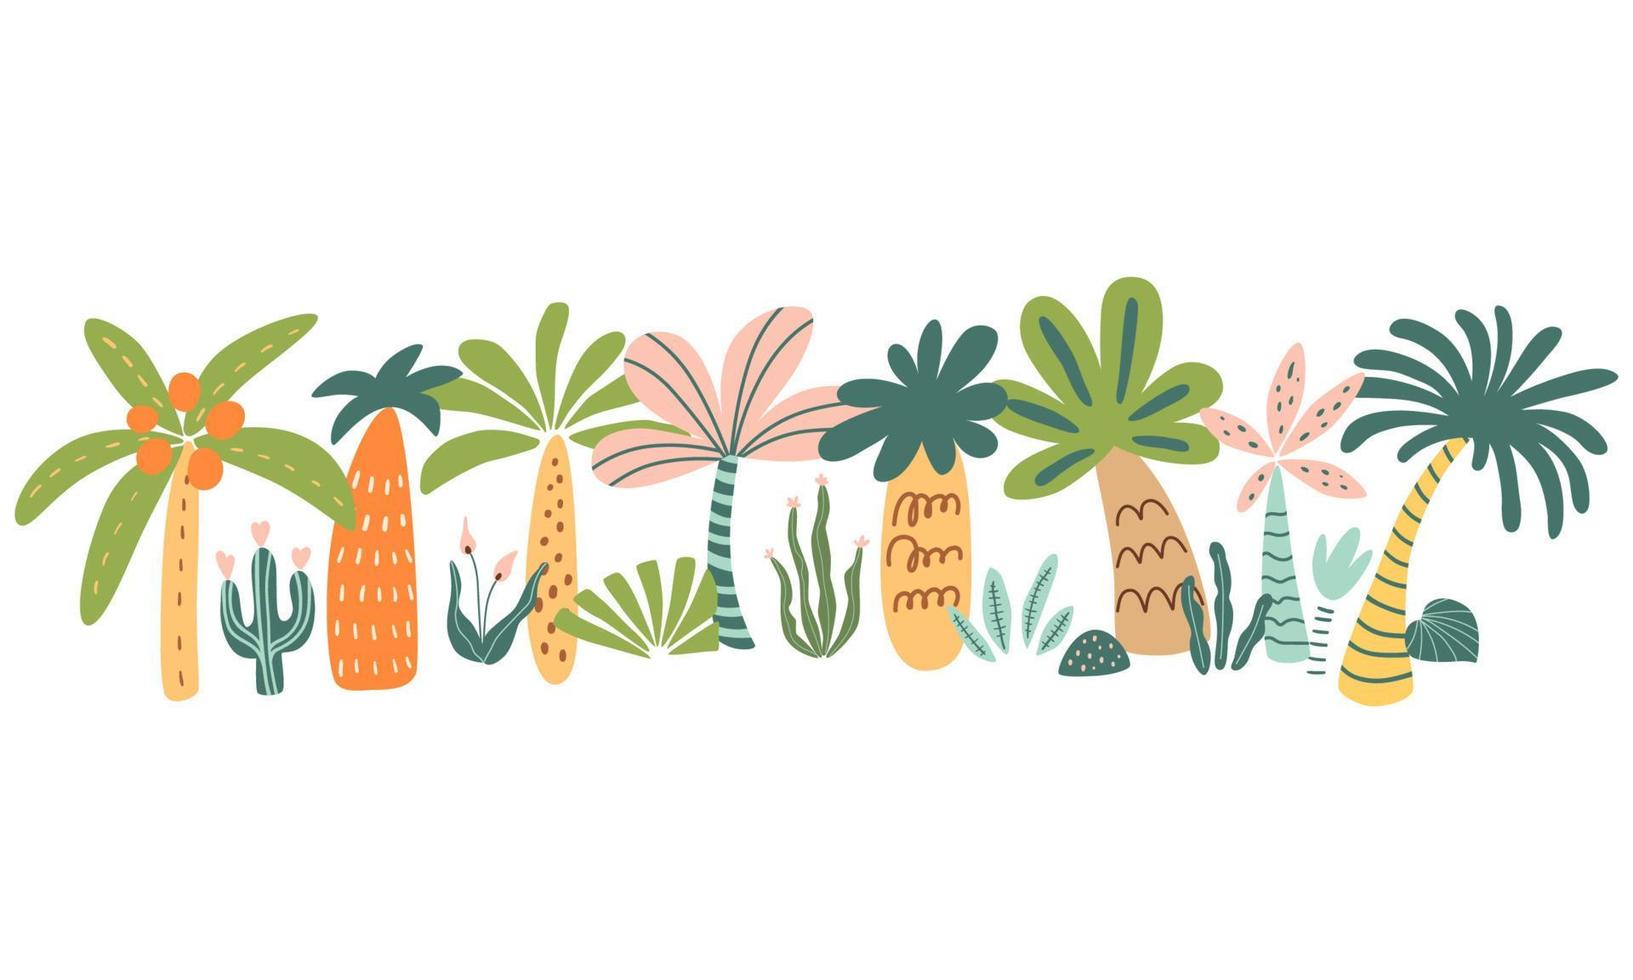 linda palma árbol colocar. tropical palma árbol mano dibujado verano elemento. Hawai estilo decorativo borde. dibujos animados arboles vector ilustración. exótico plantas para fiesta carteles, tarjetas, invitaciones selva fiesta.